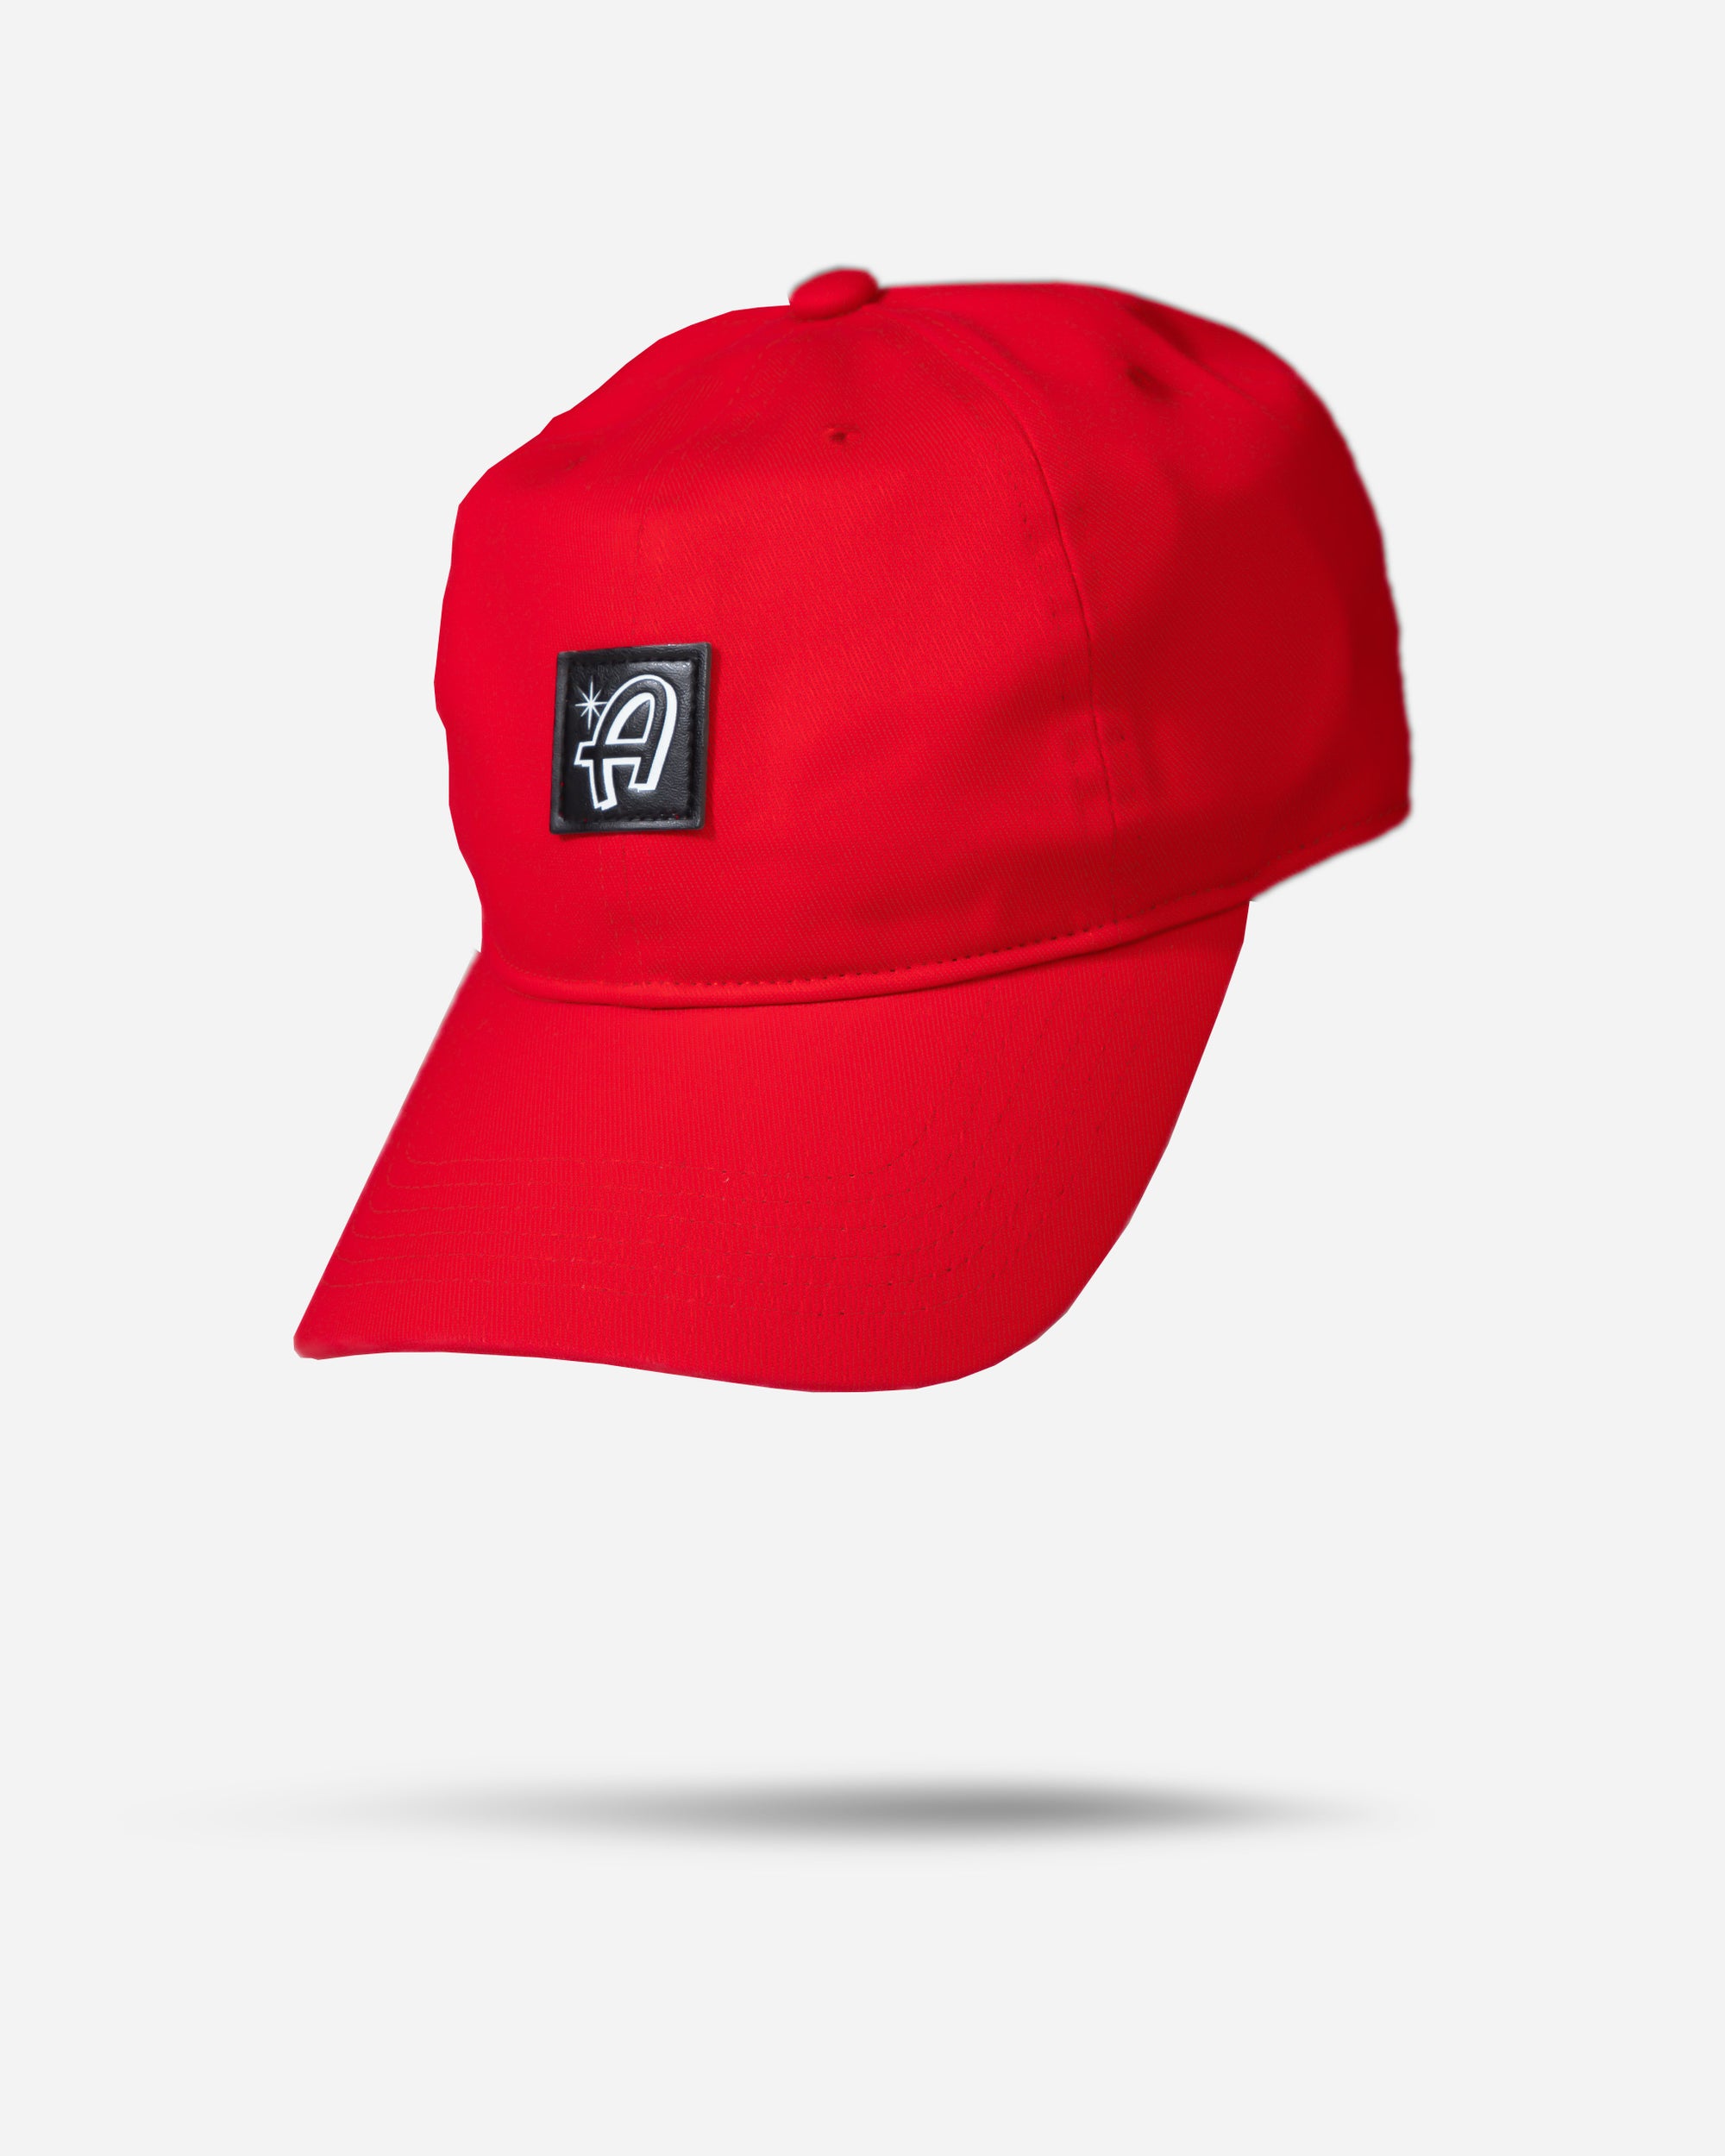 Adam's Red Square Logo Dad Hat